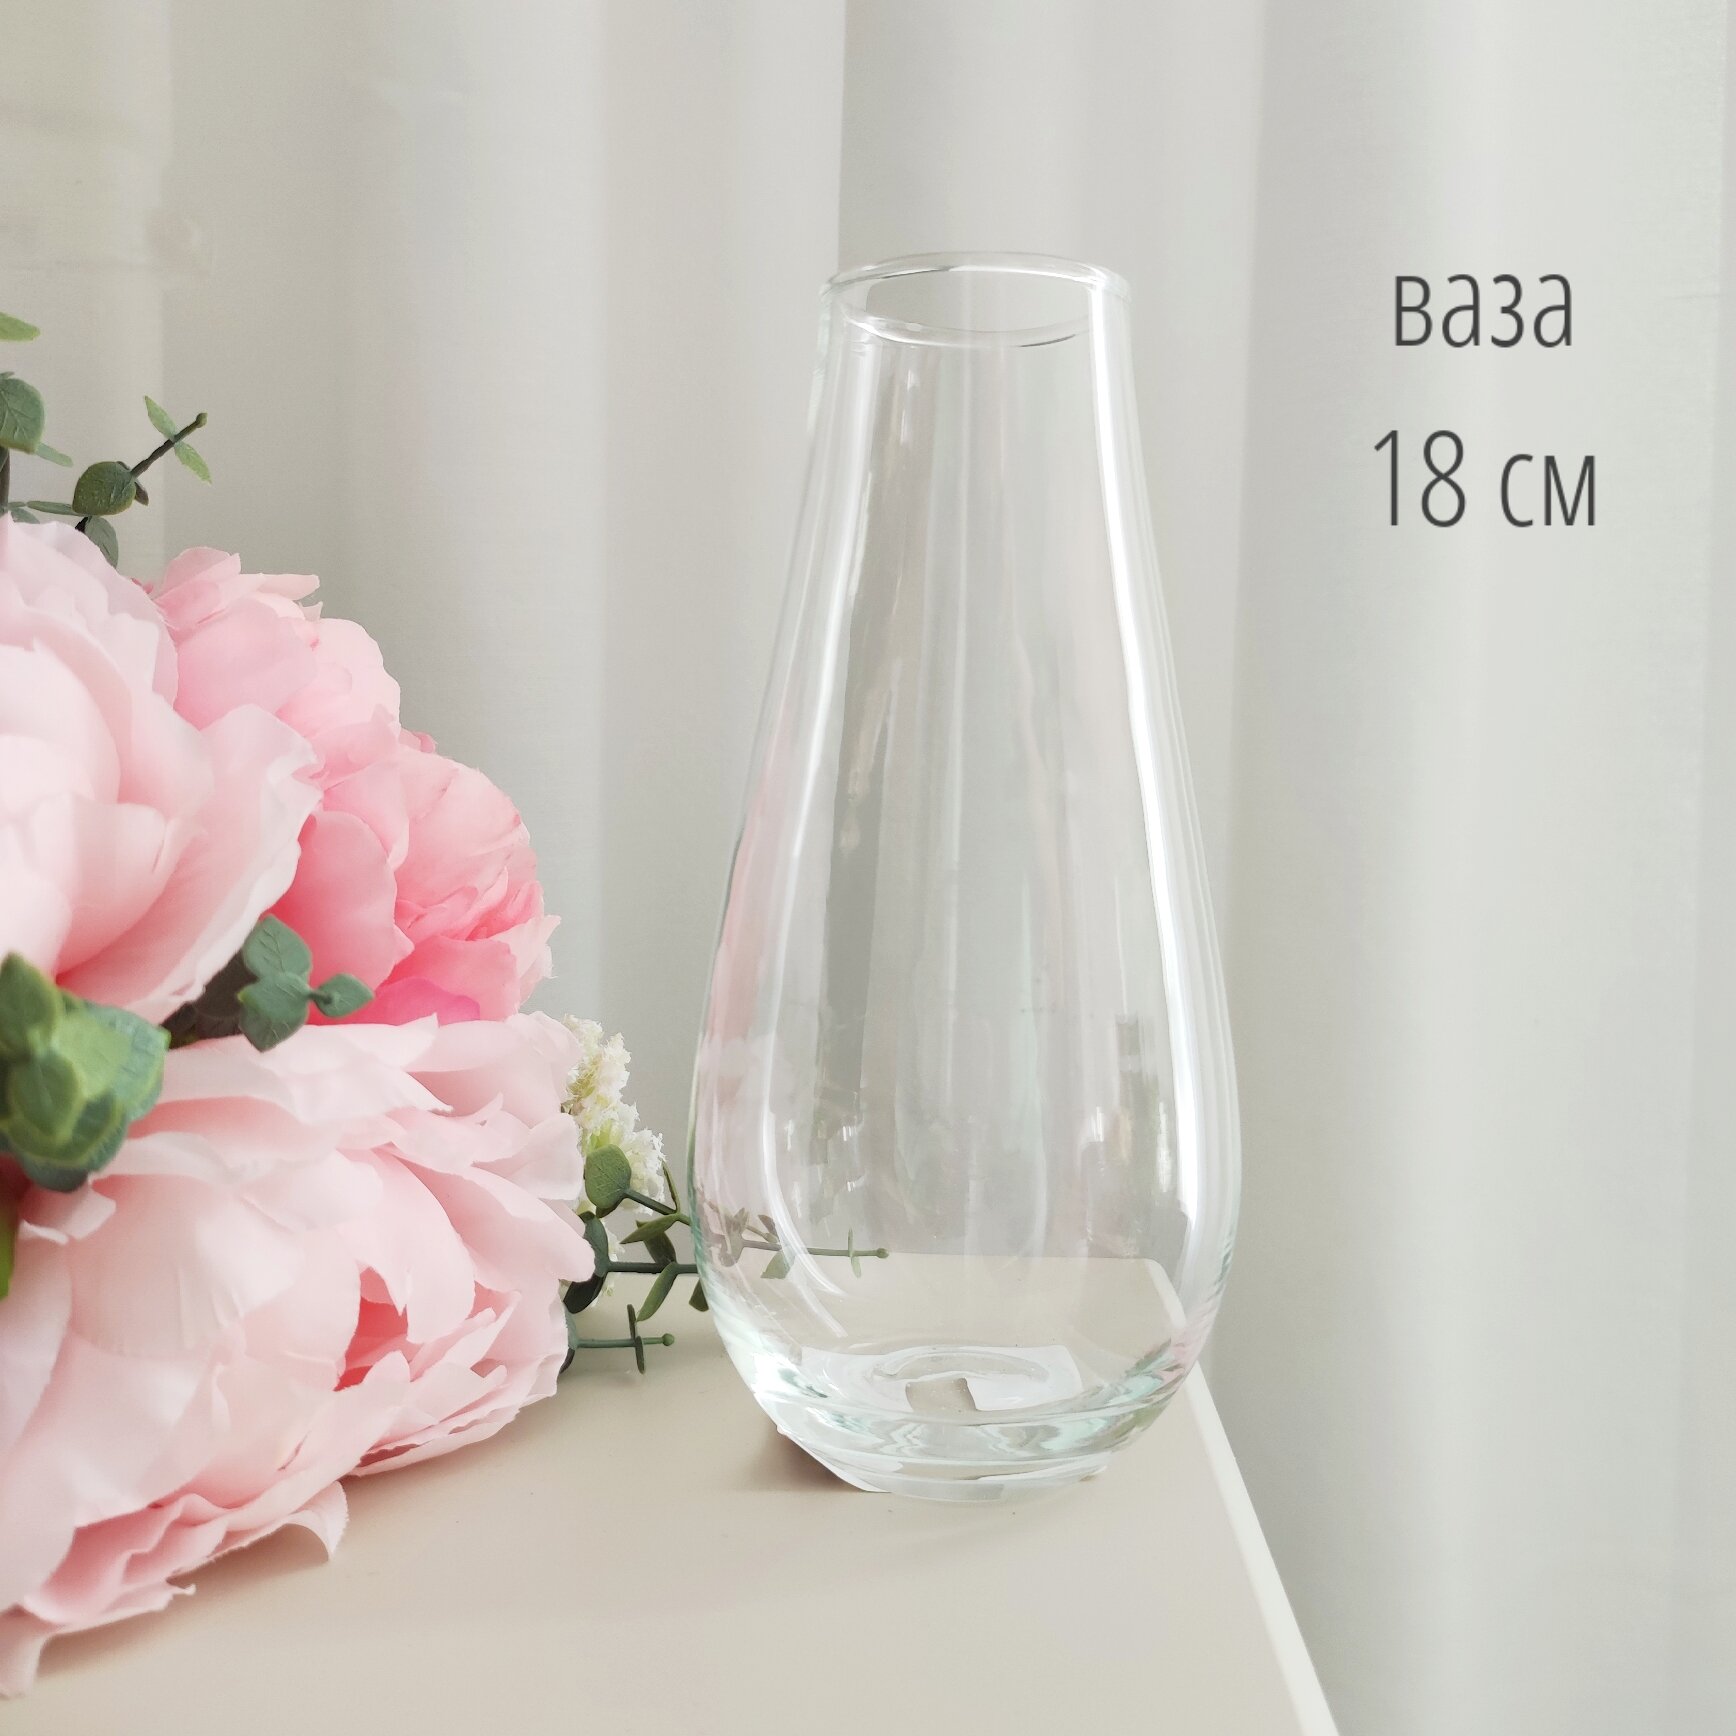 Ваза 18 см, ваза для цветов, ваза для интерьера